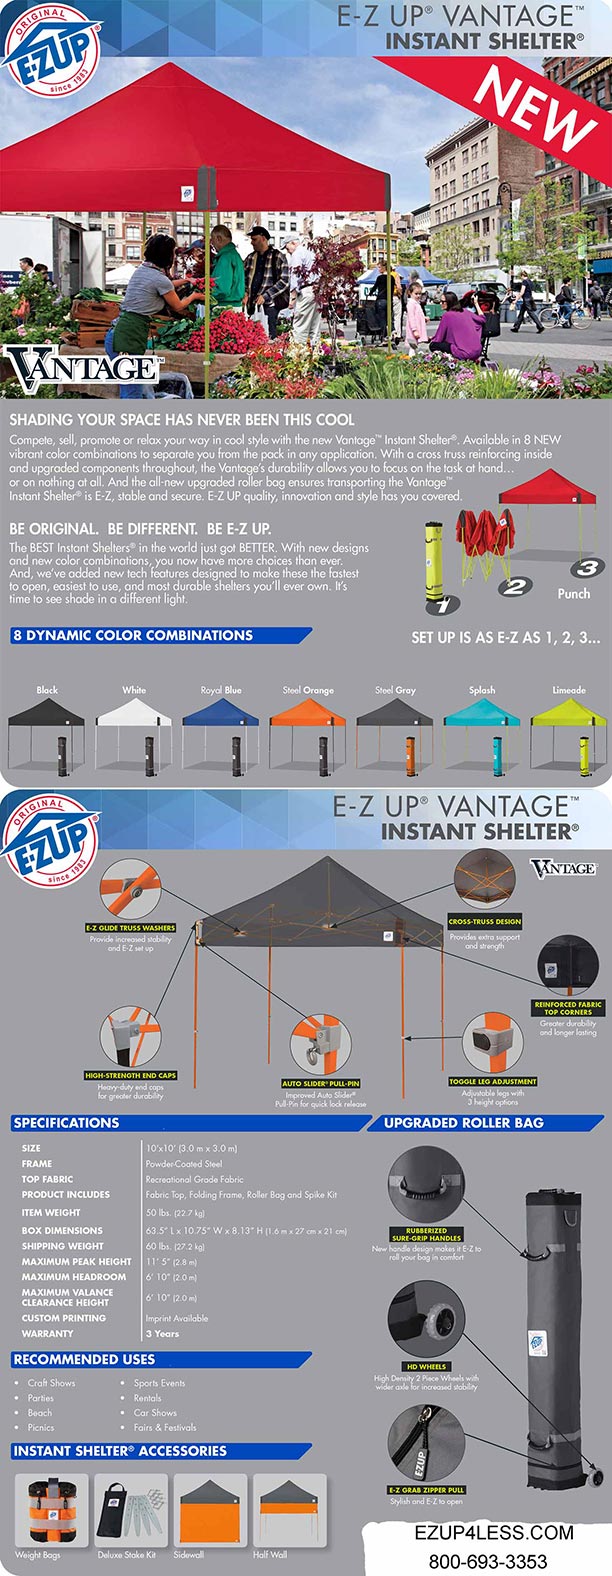 EZ UP Vantage 10' x 10' Shelter with Roller Bag